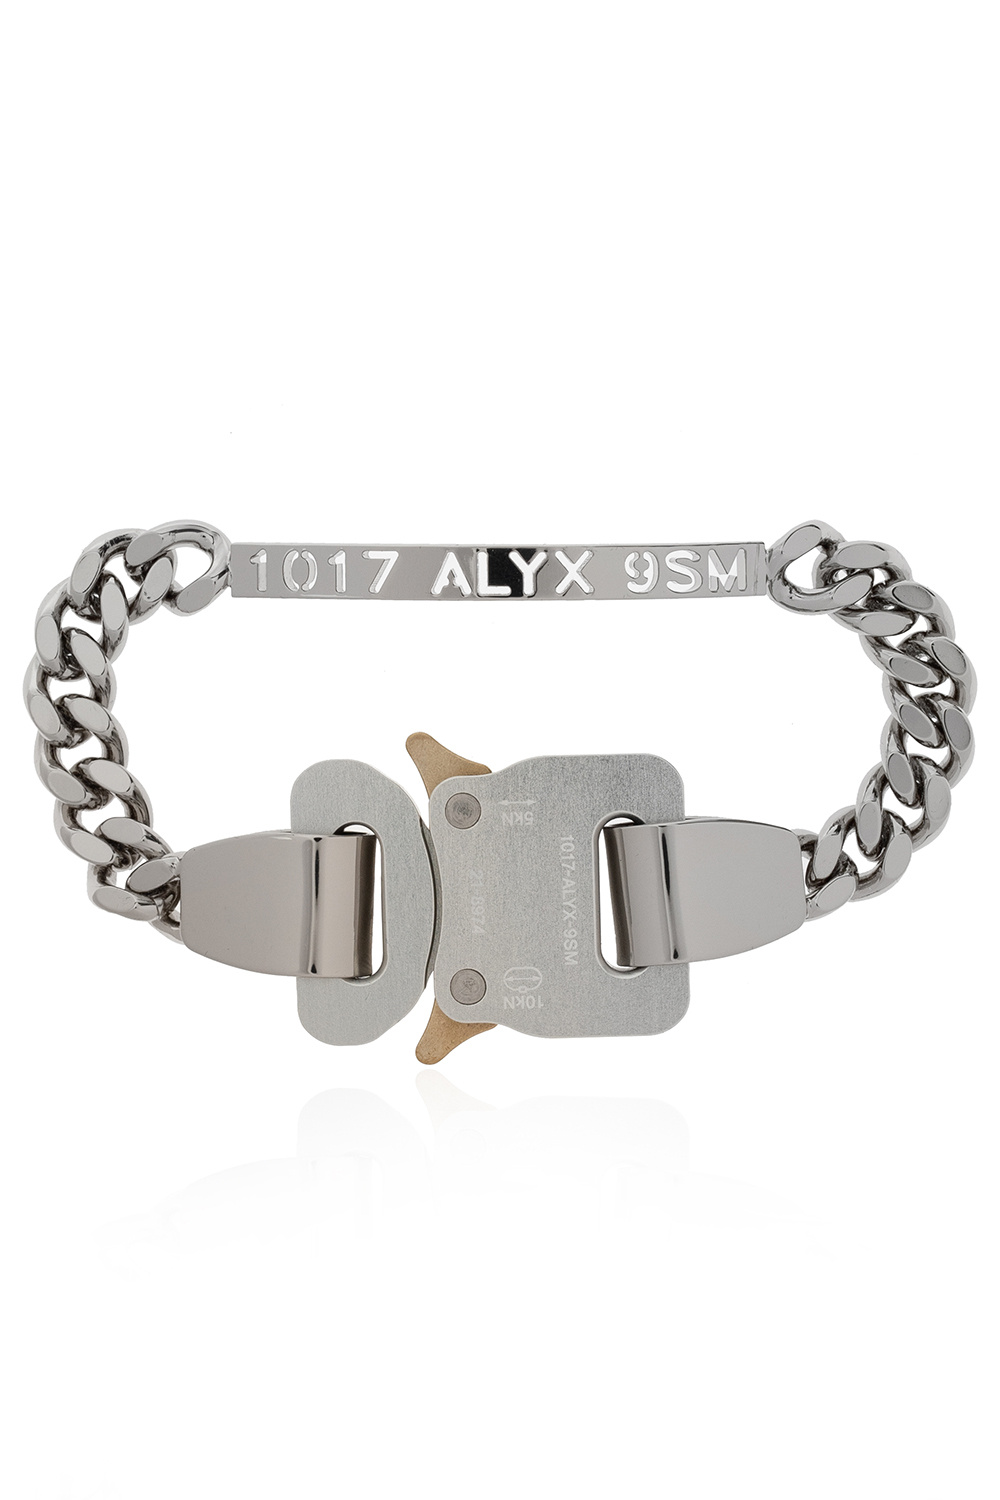 1017 ALYX 9SM Chain bracelet | Men's Jewelery | StclaircomoShops